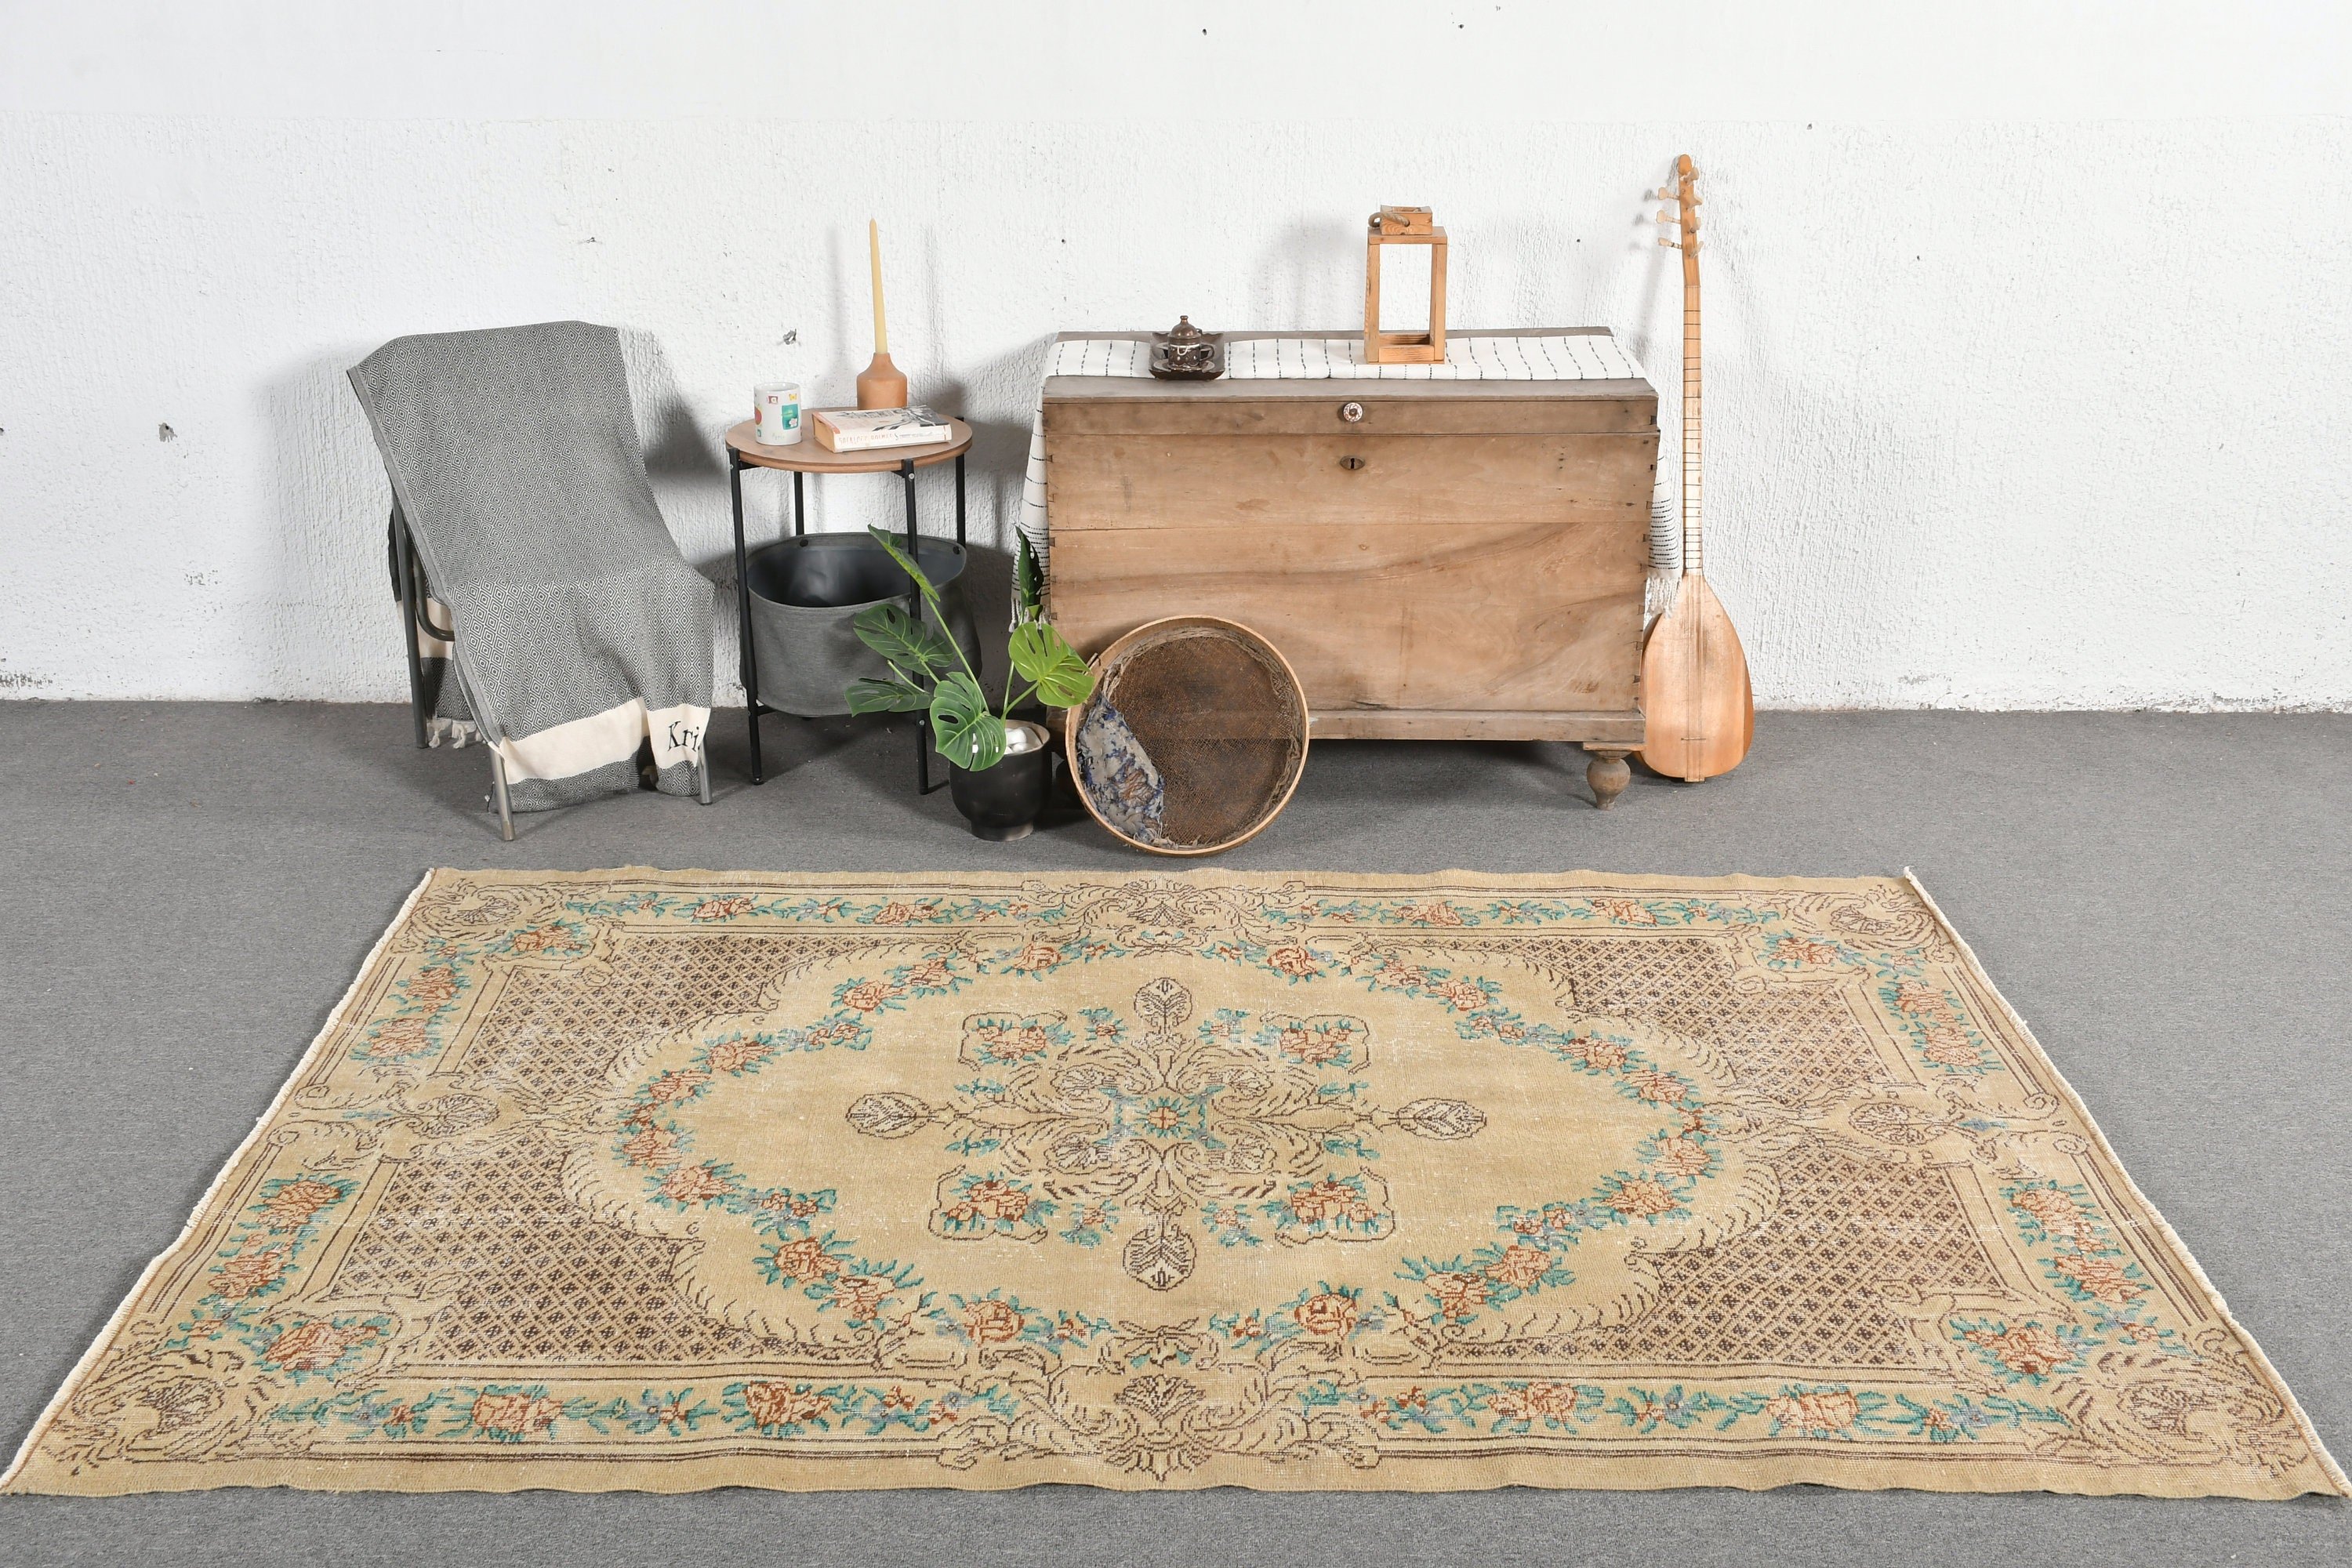 Vintage Rug, Rugs for Bedroom, Moroccan Rugs, Bedroom Rugs, Living Room Rugs, Brown  5.2x7.9 ft Large Rug, Turkish Rug